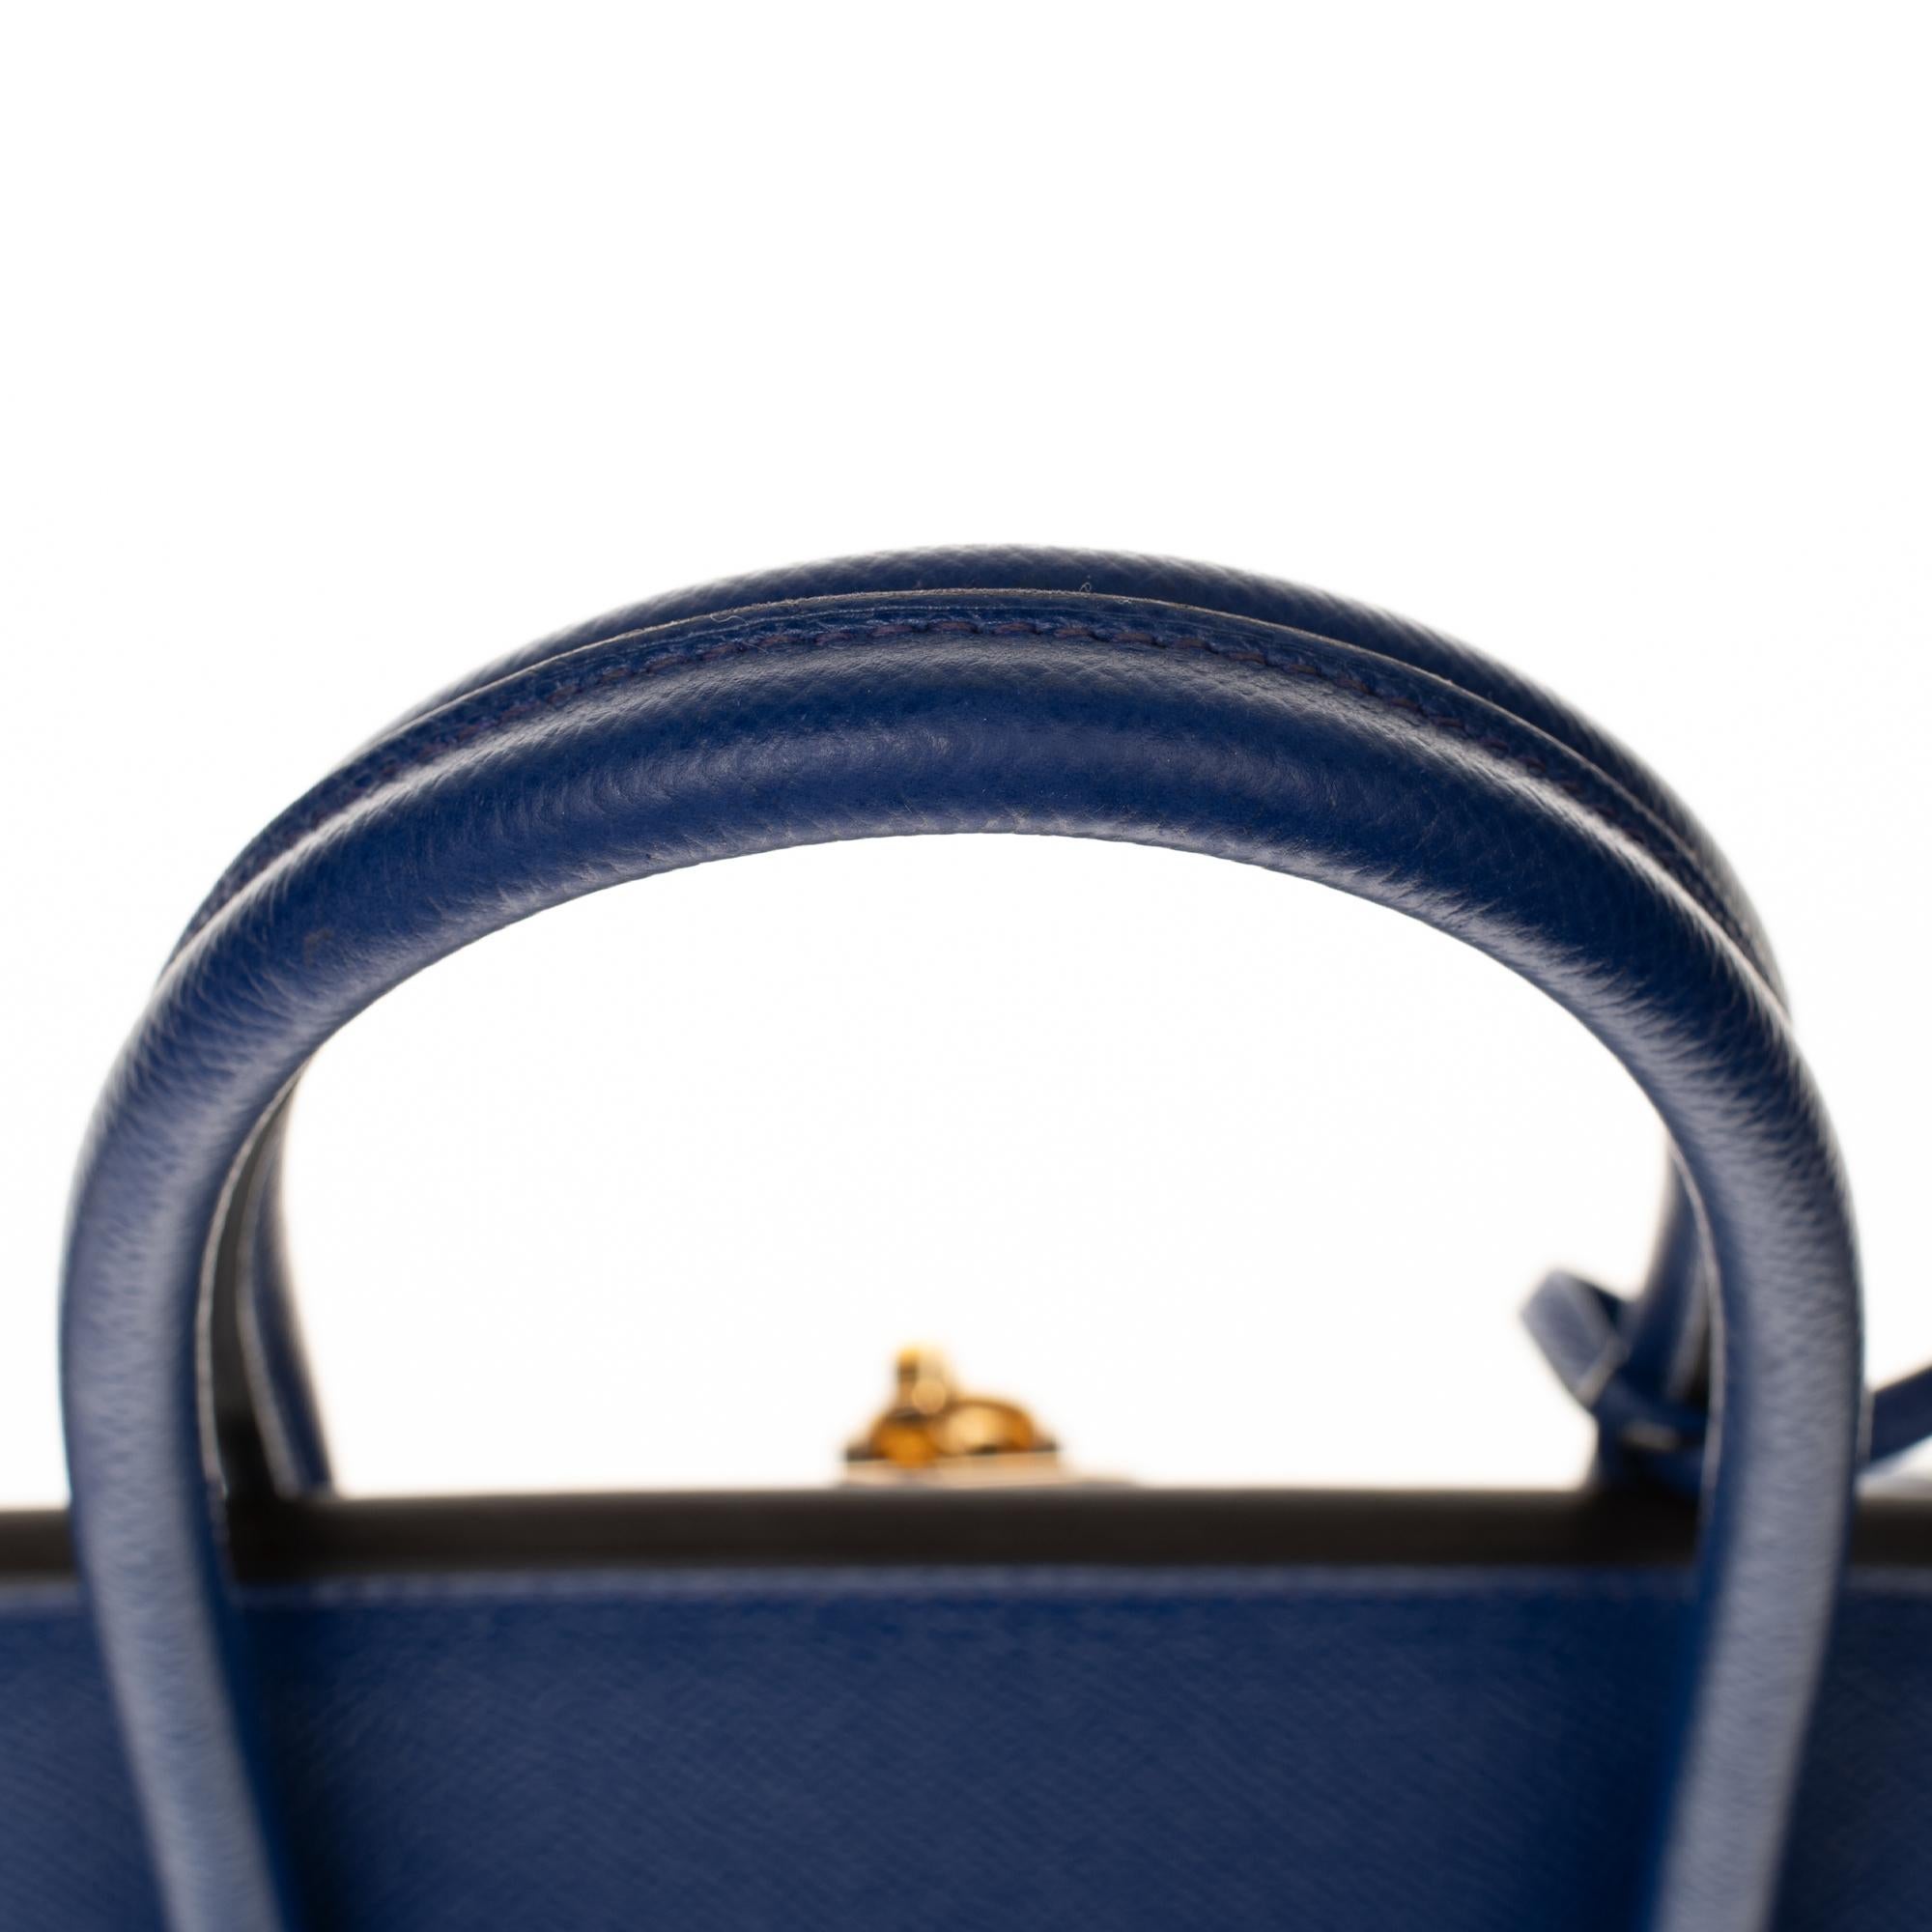 Hermès Birkin 35 handbag in bleu électrique epsom leather, GHW 2